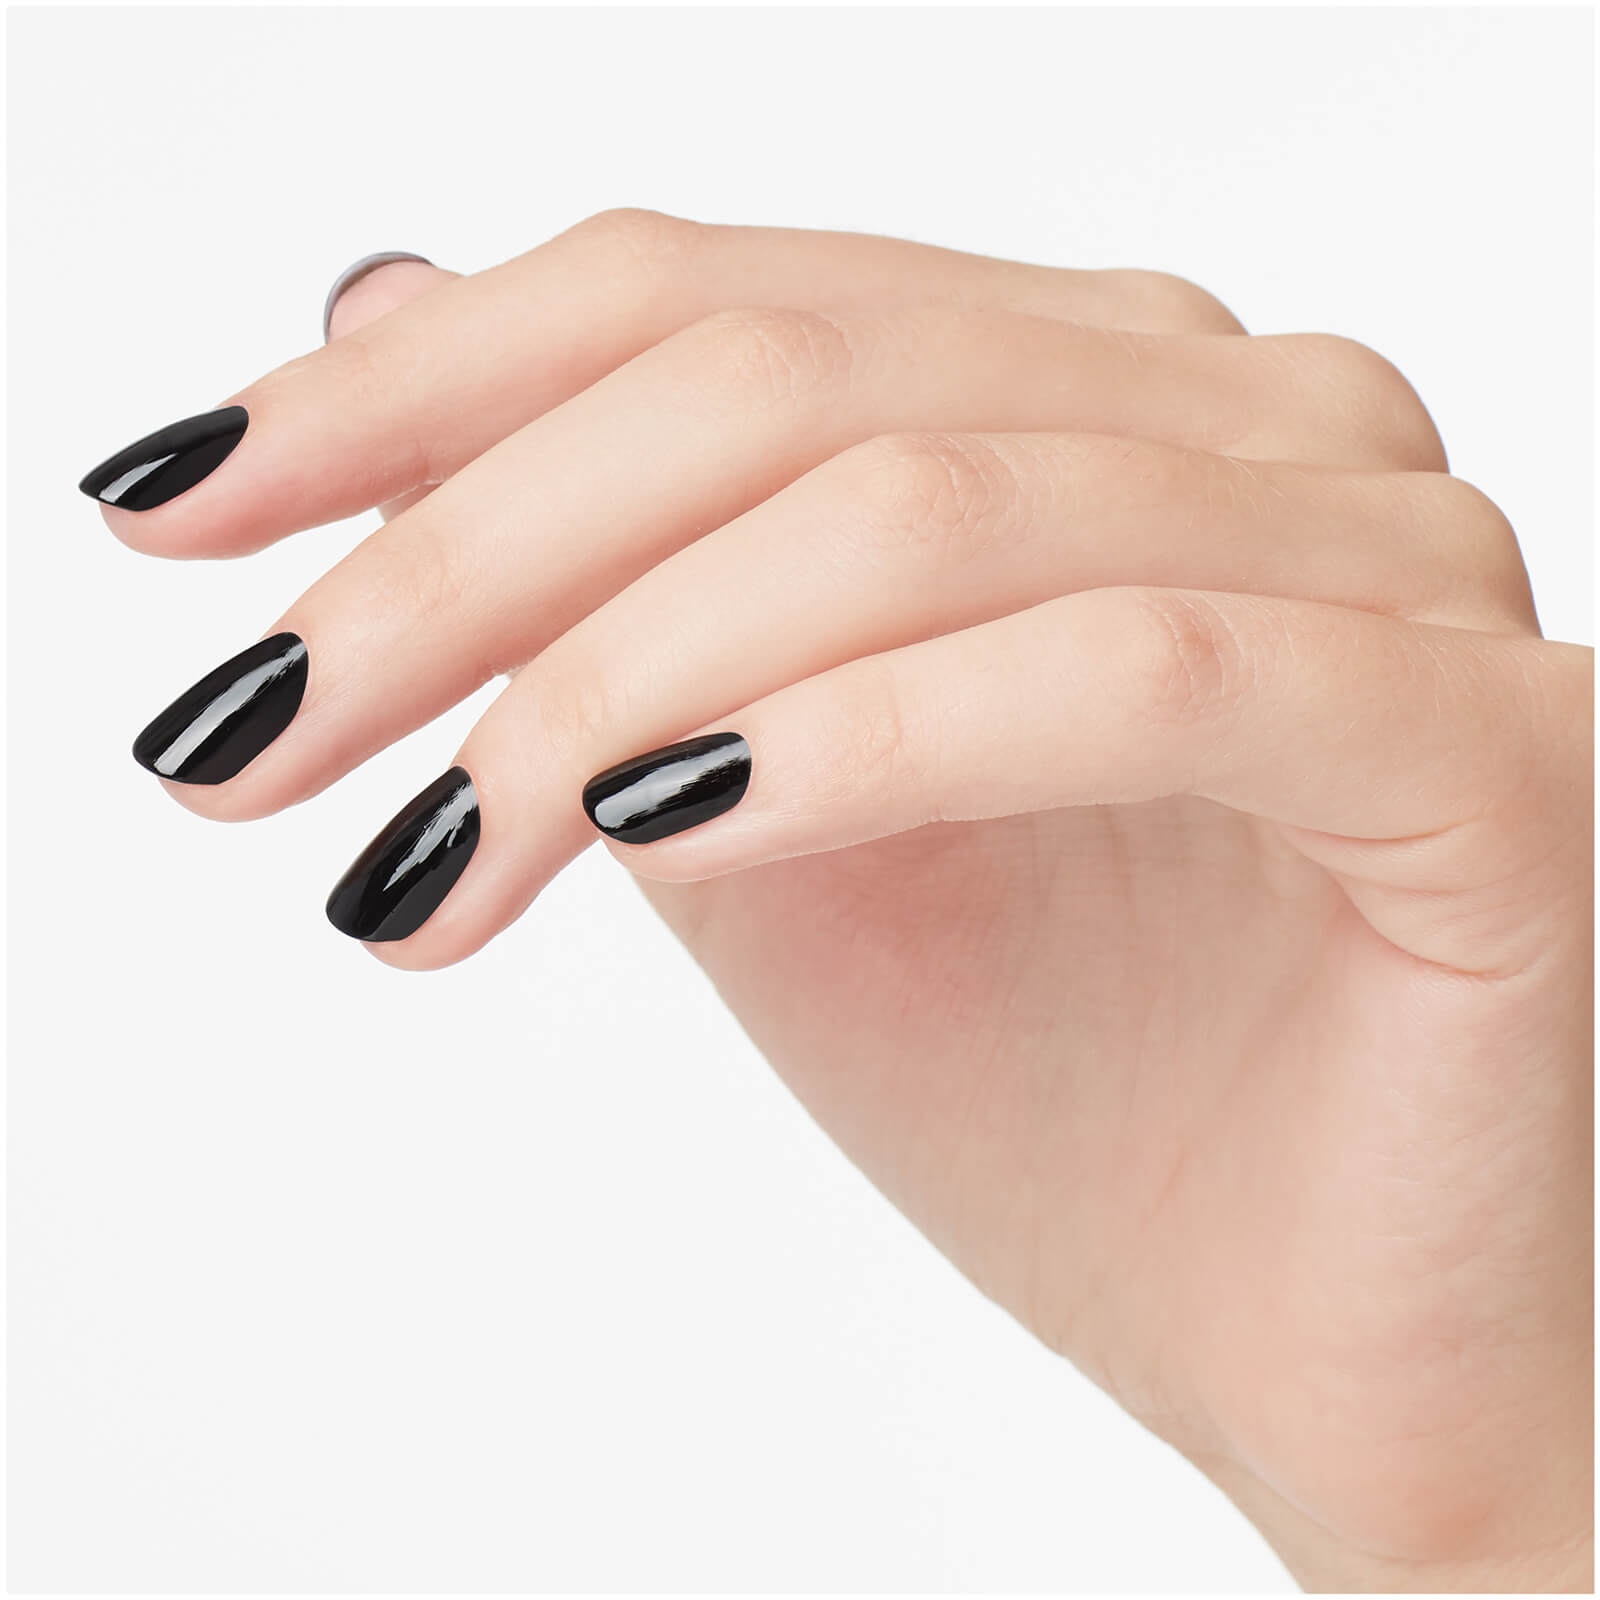 Opi Infinite Shine Long-wear Nail Polish - Lady In Black 15ml In Lady In Black